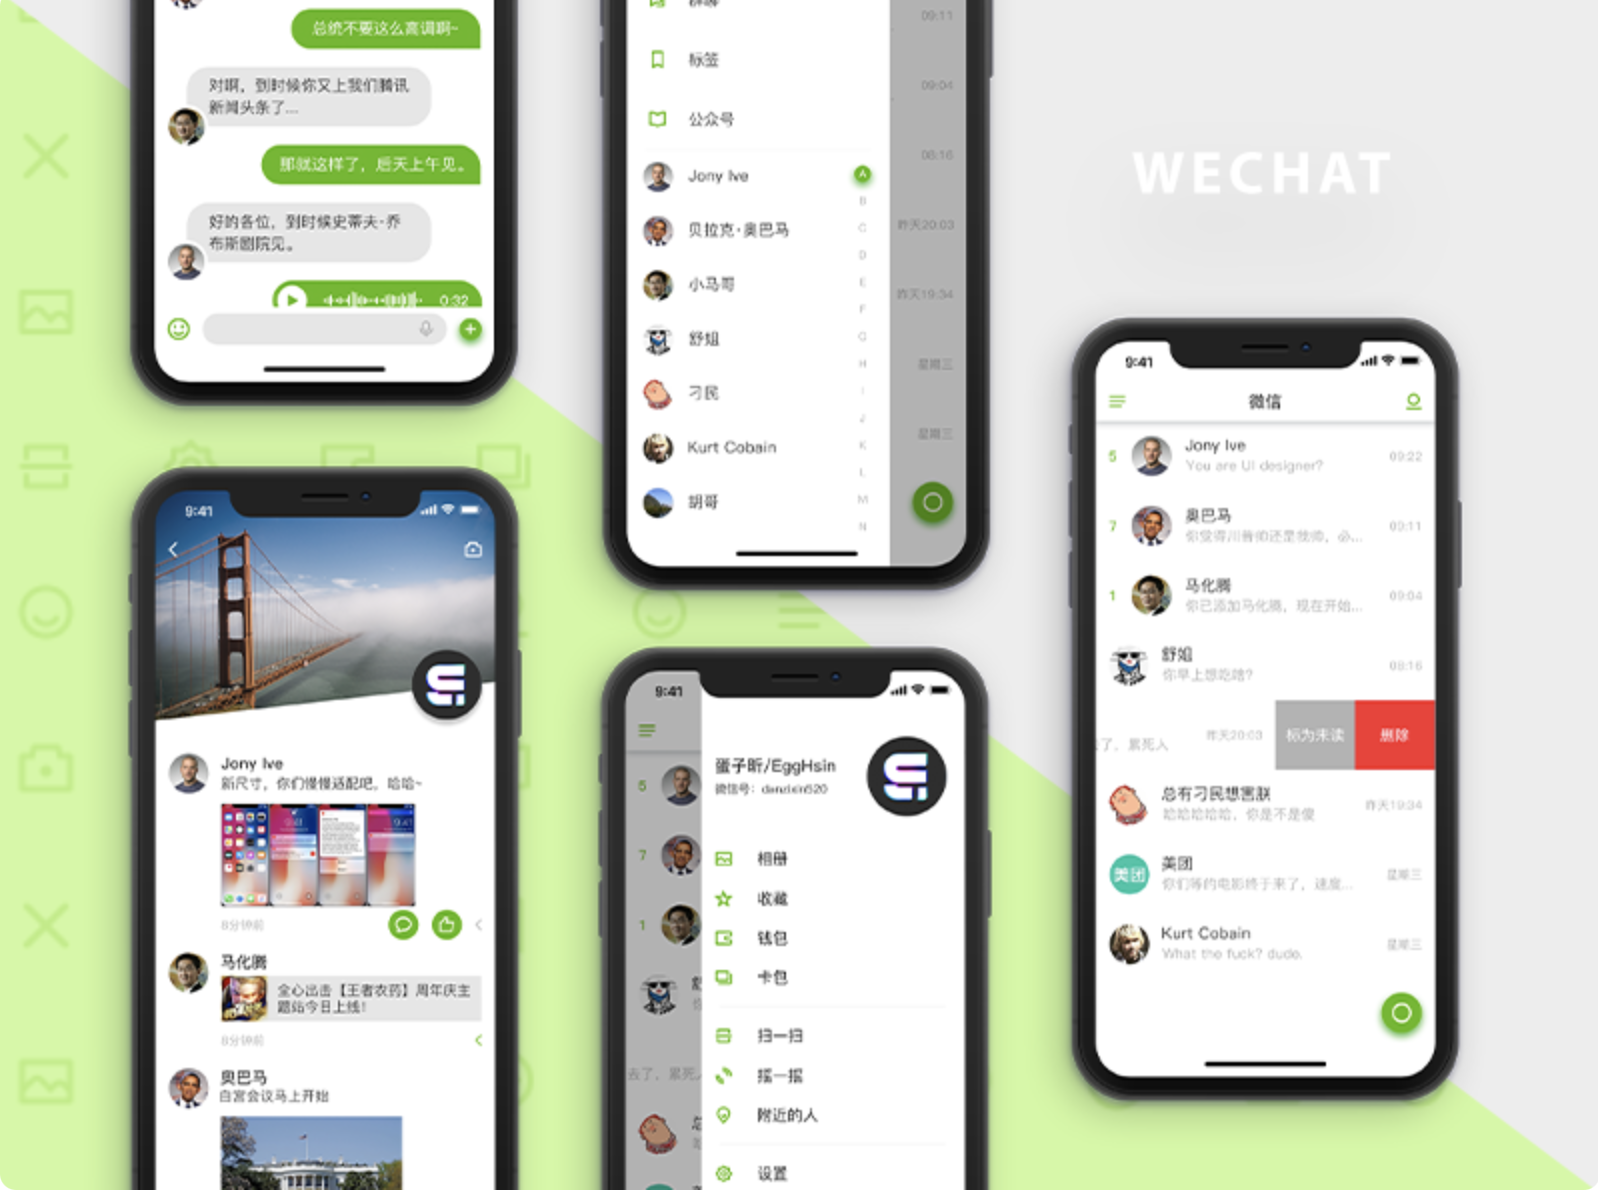 ¿Hay formas de hackear cuentas rápidamente en WeChat?